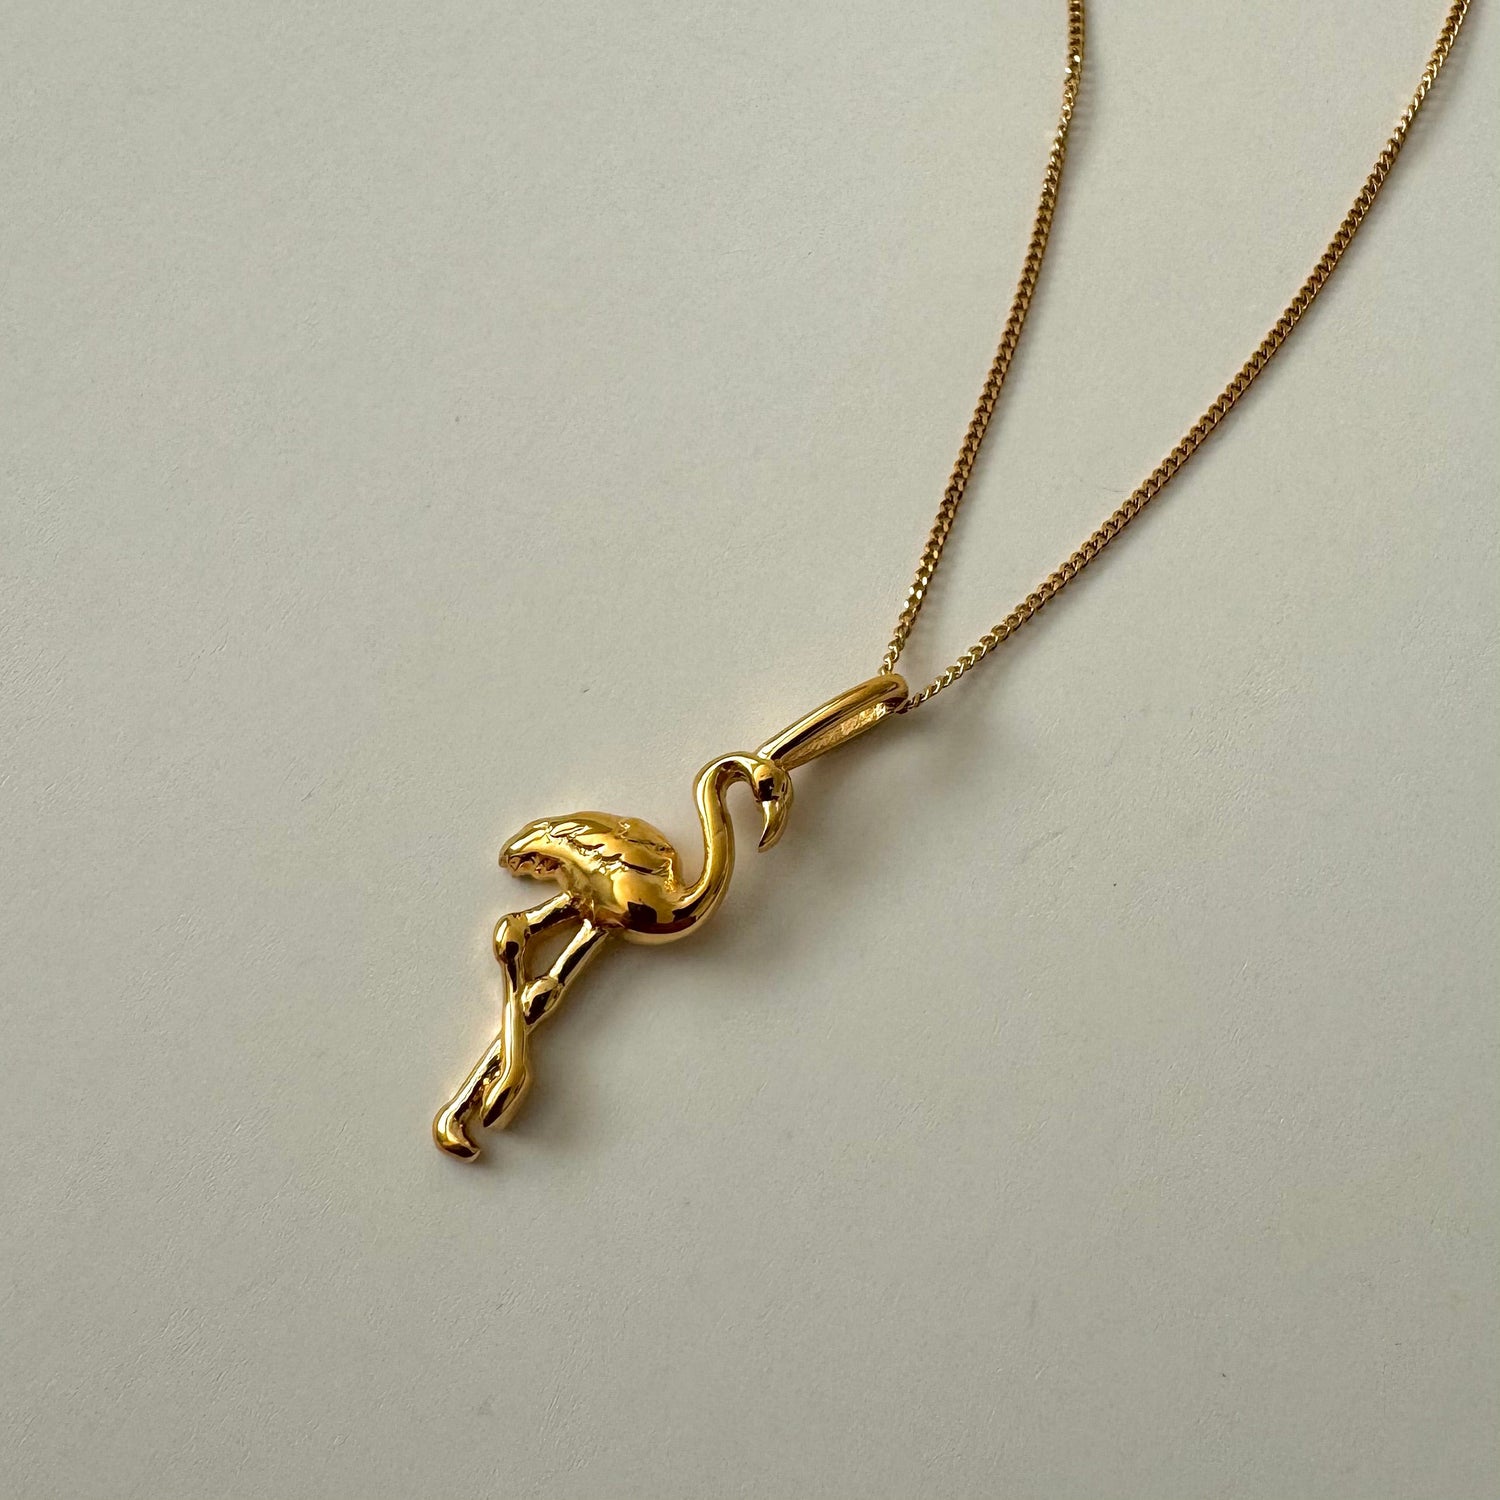 Flamingo Necklace - Gold - Namaste Jewelry Canada